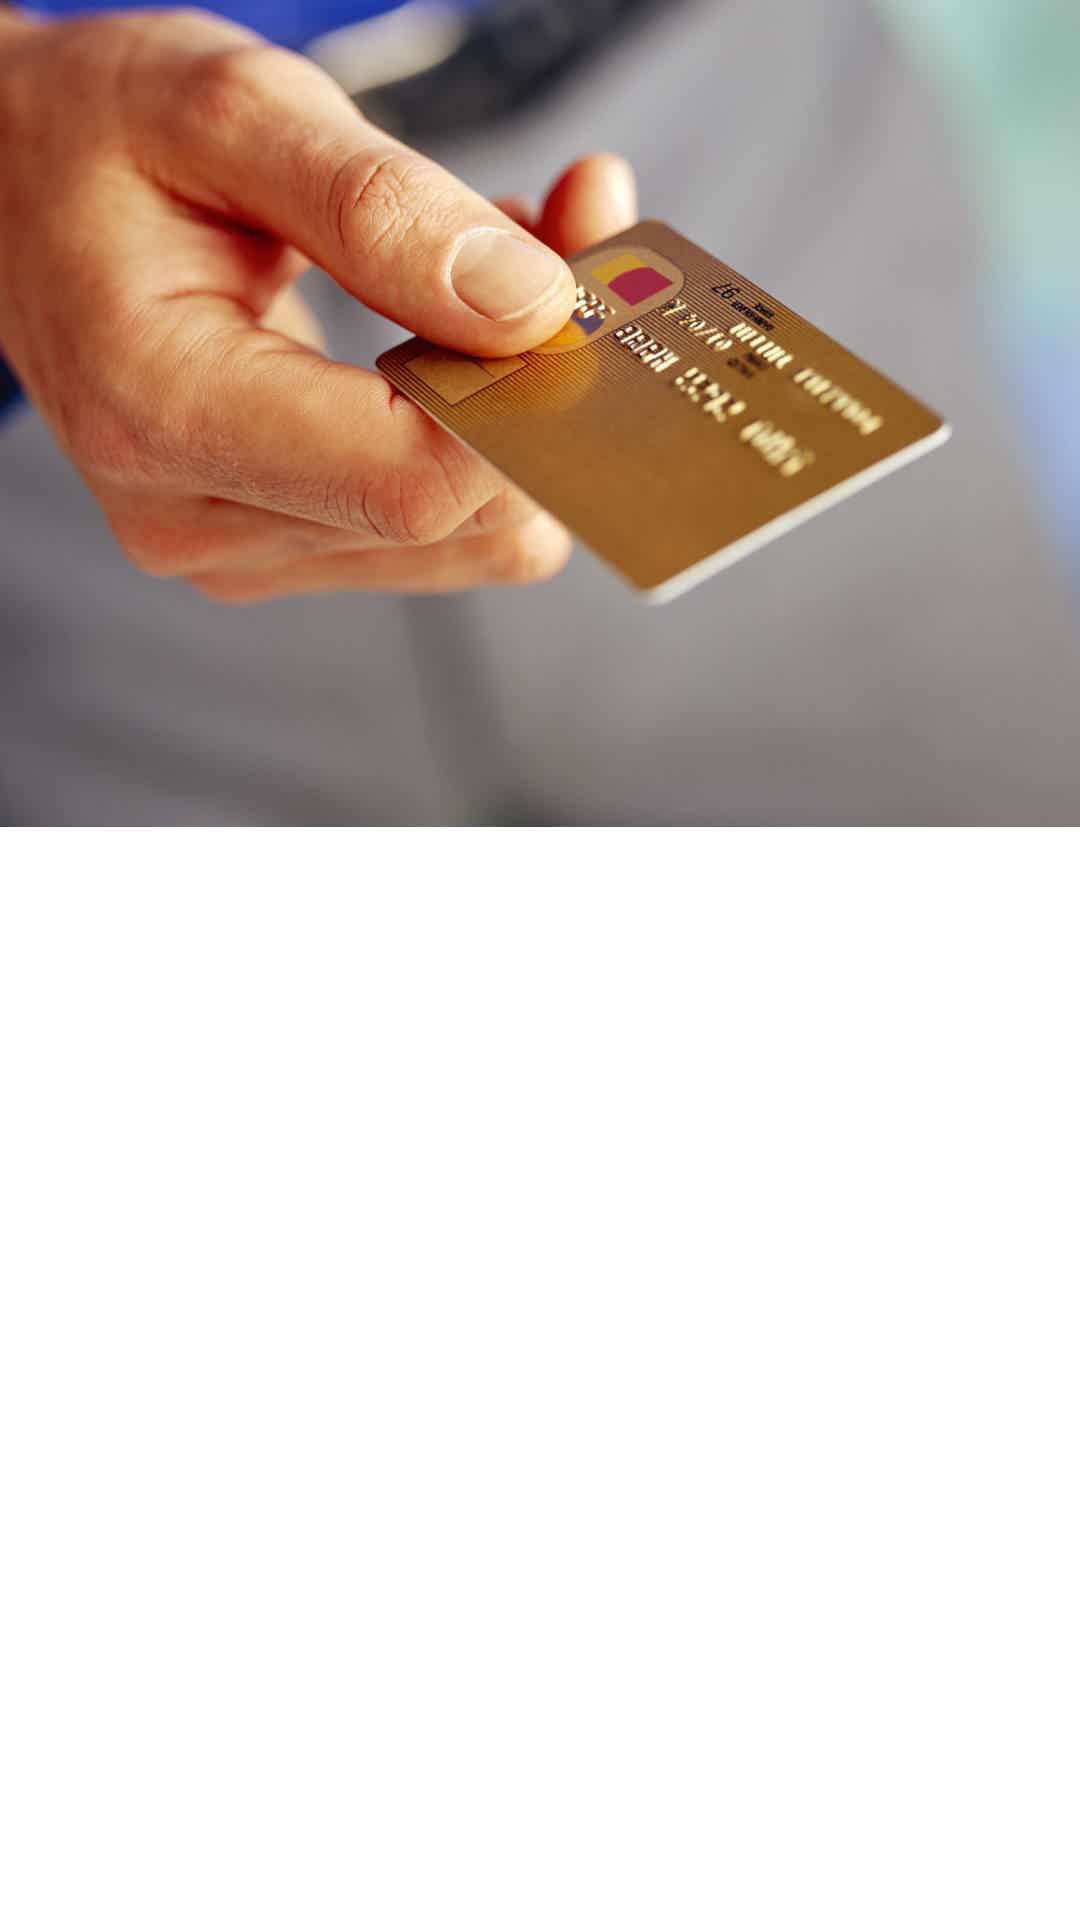 Cartão de crédito dourado.